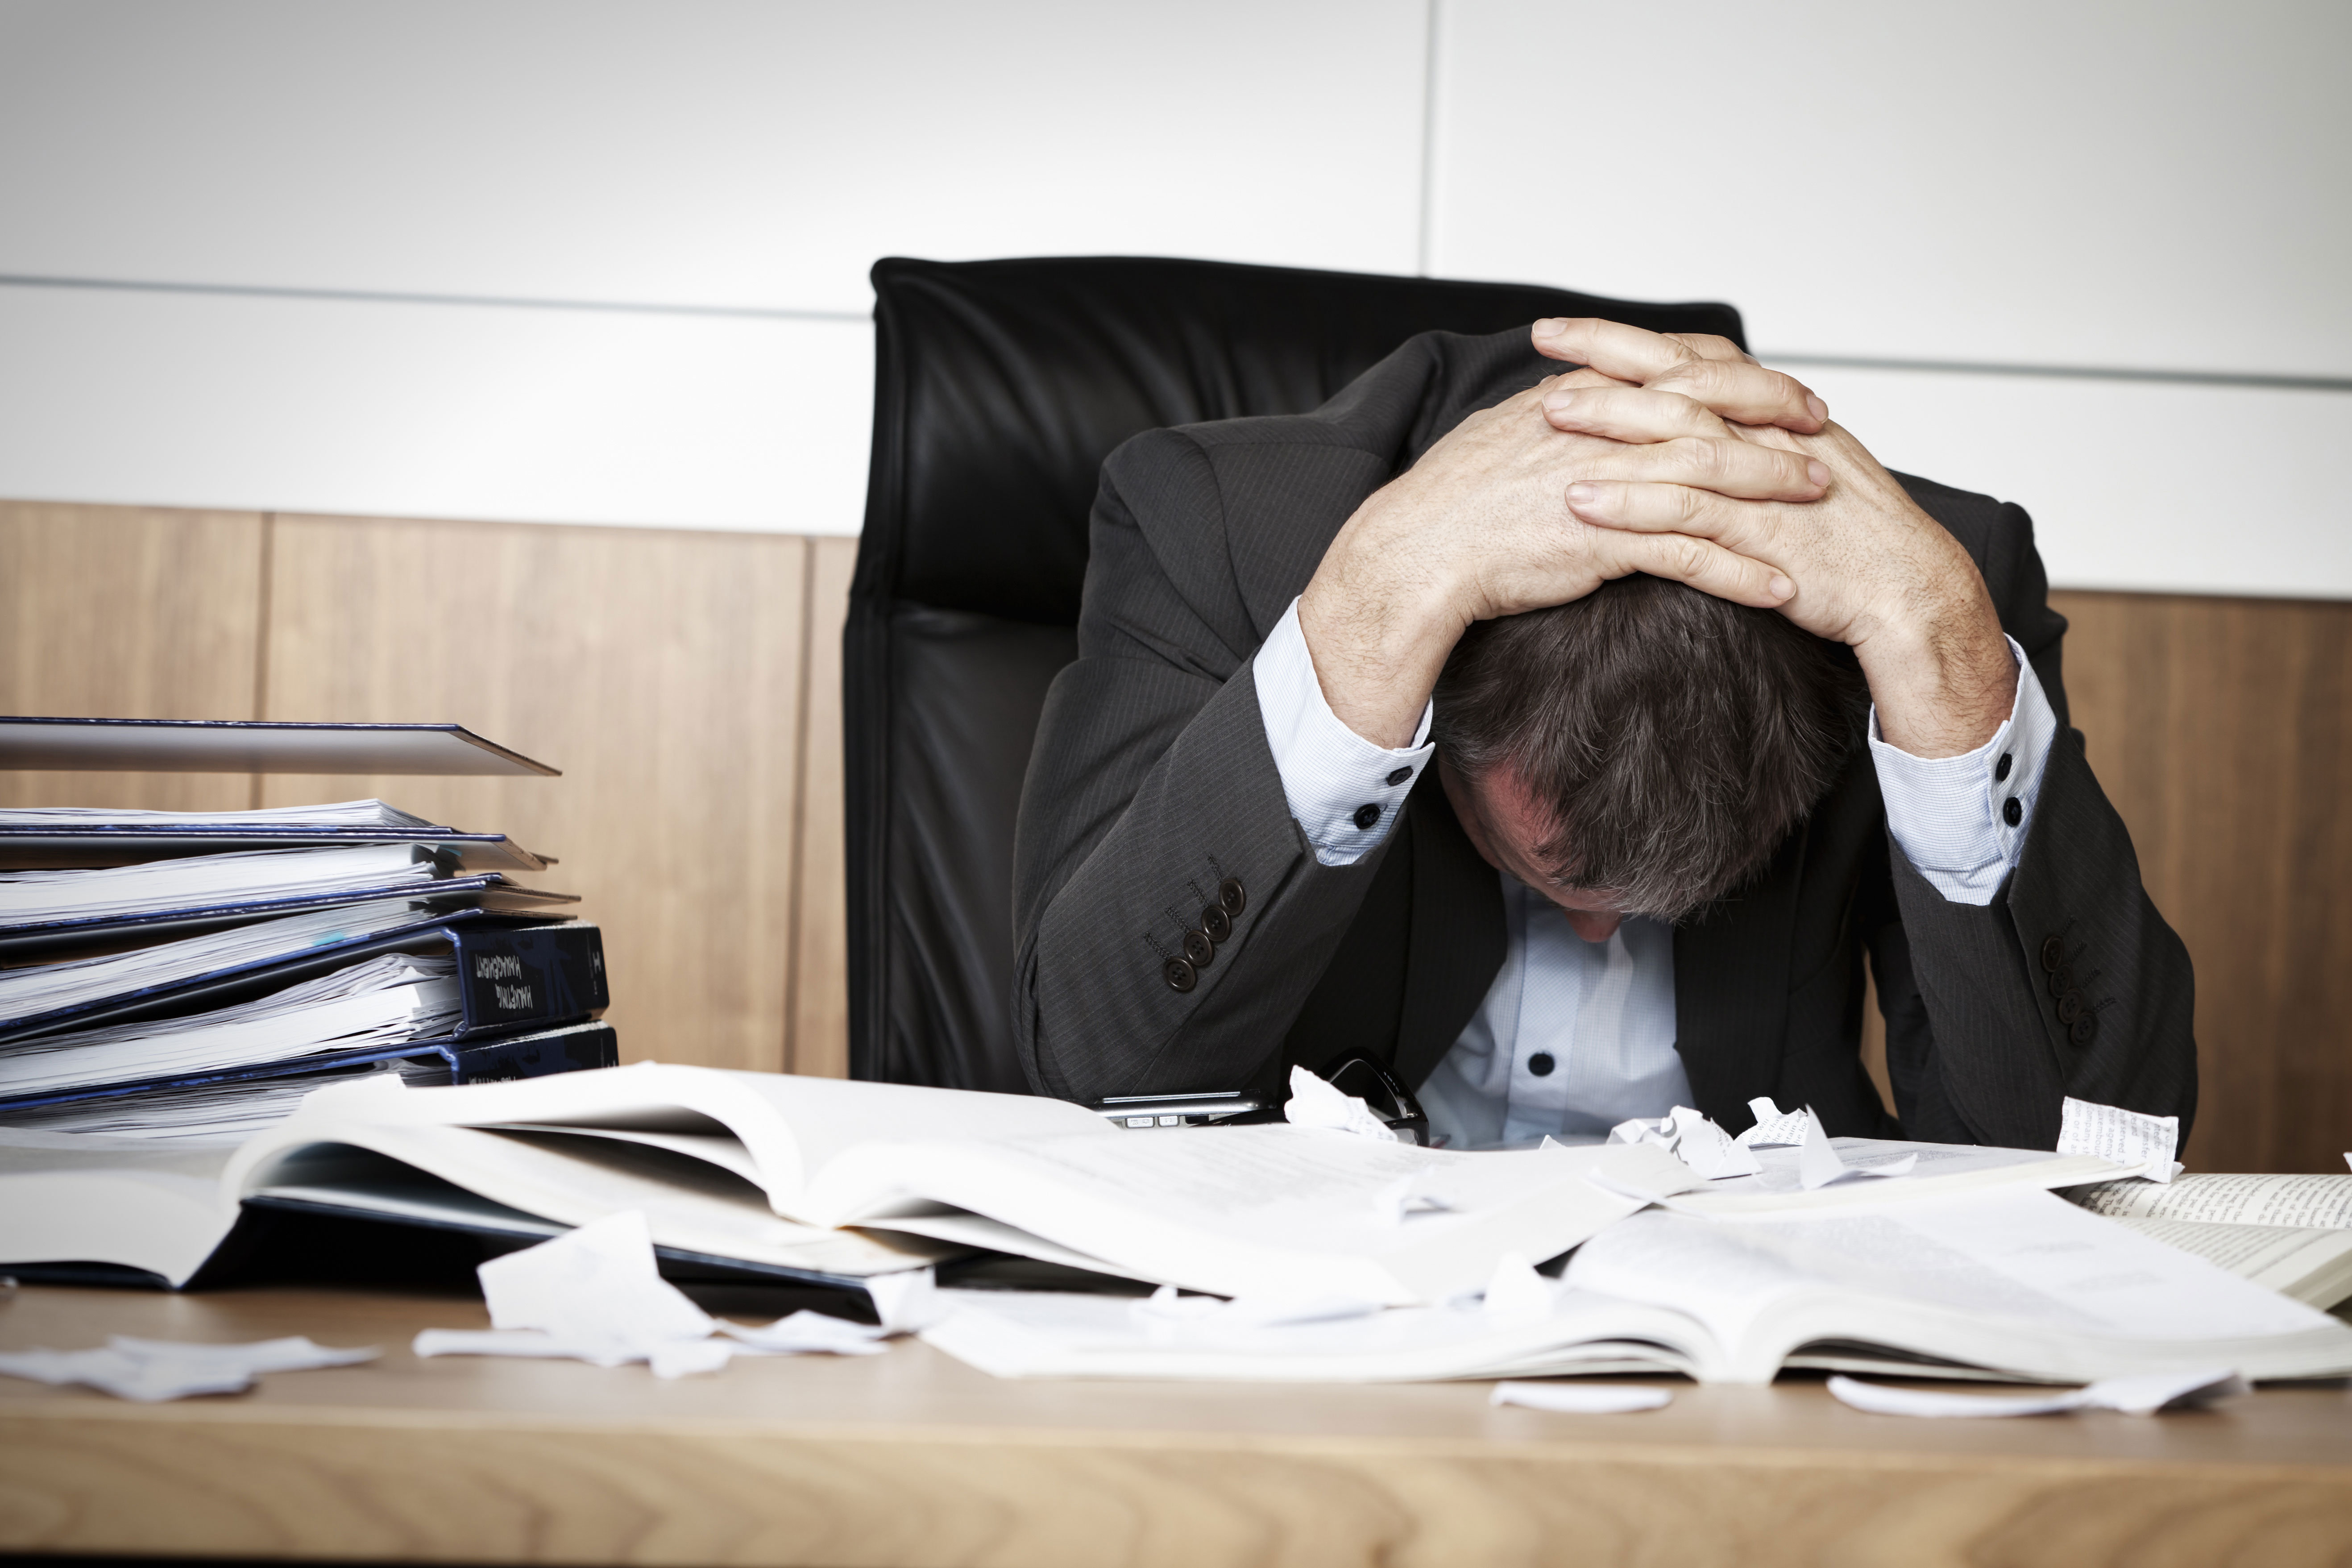 “Lo stress in ufficio ti toglie 33 anni di vita”, l’indagine che fa discutere